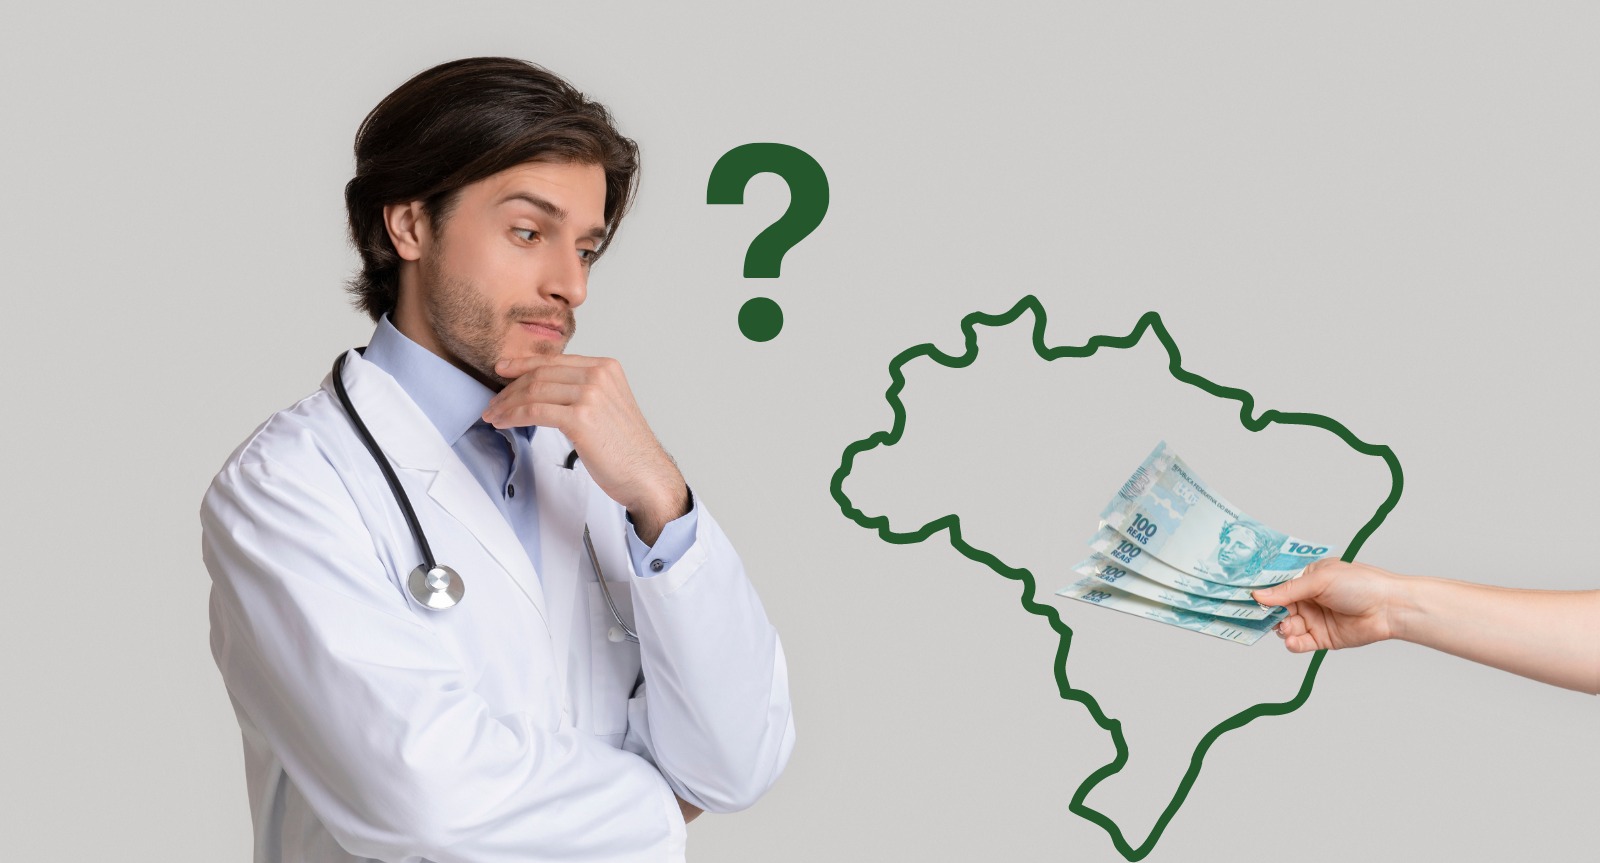 Descubra quanto ganha um médico que trabalha no Brasil?